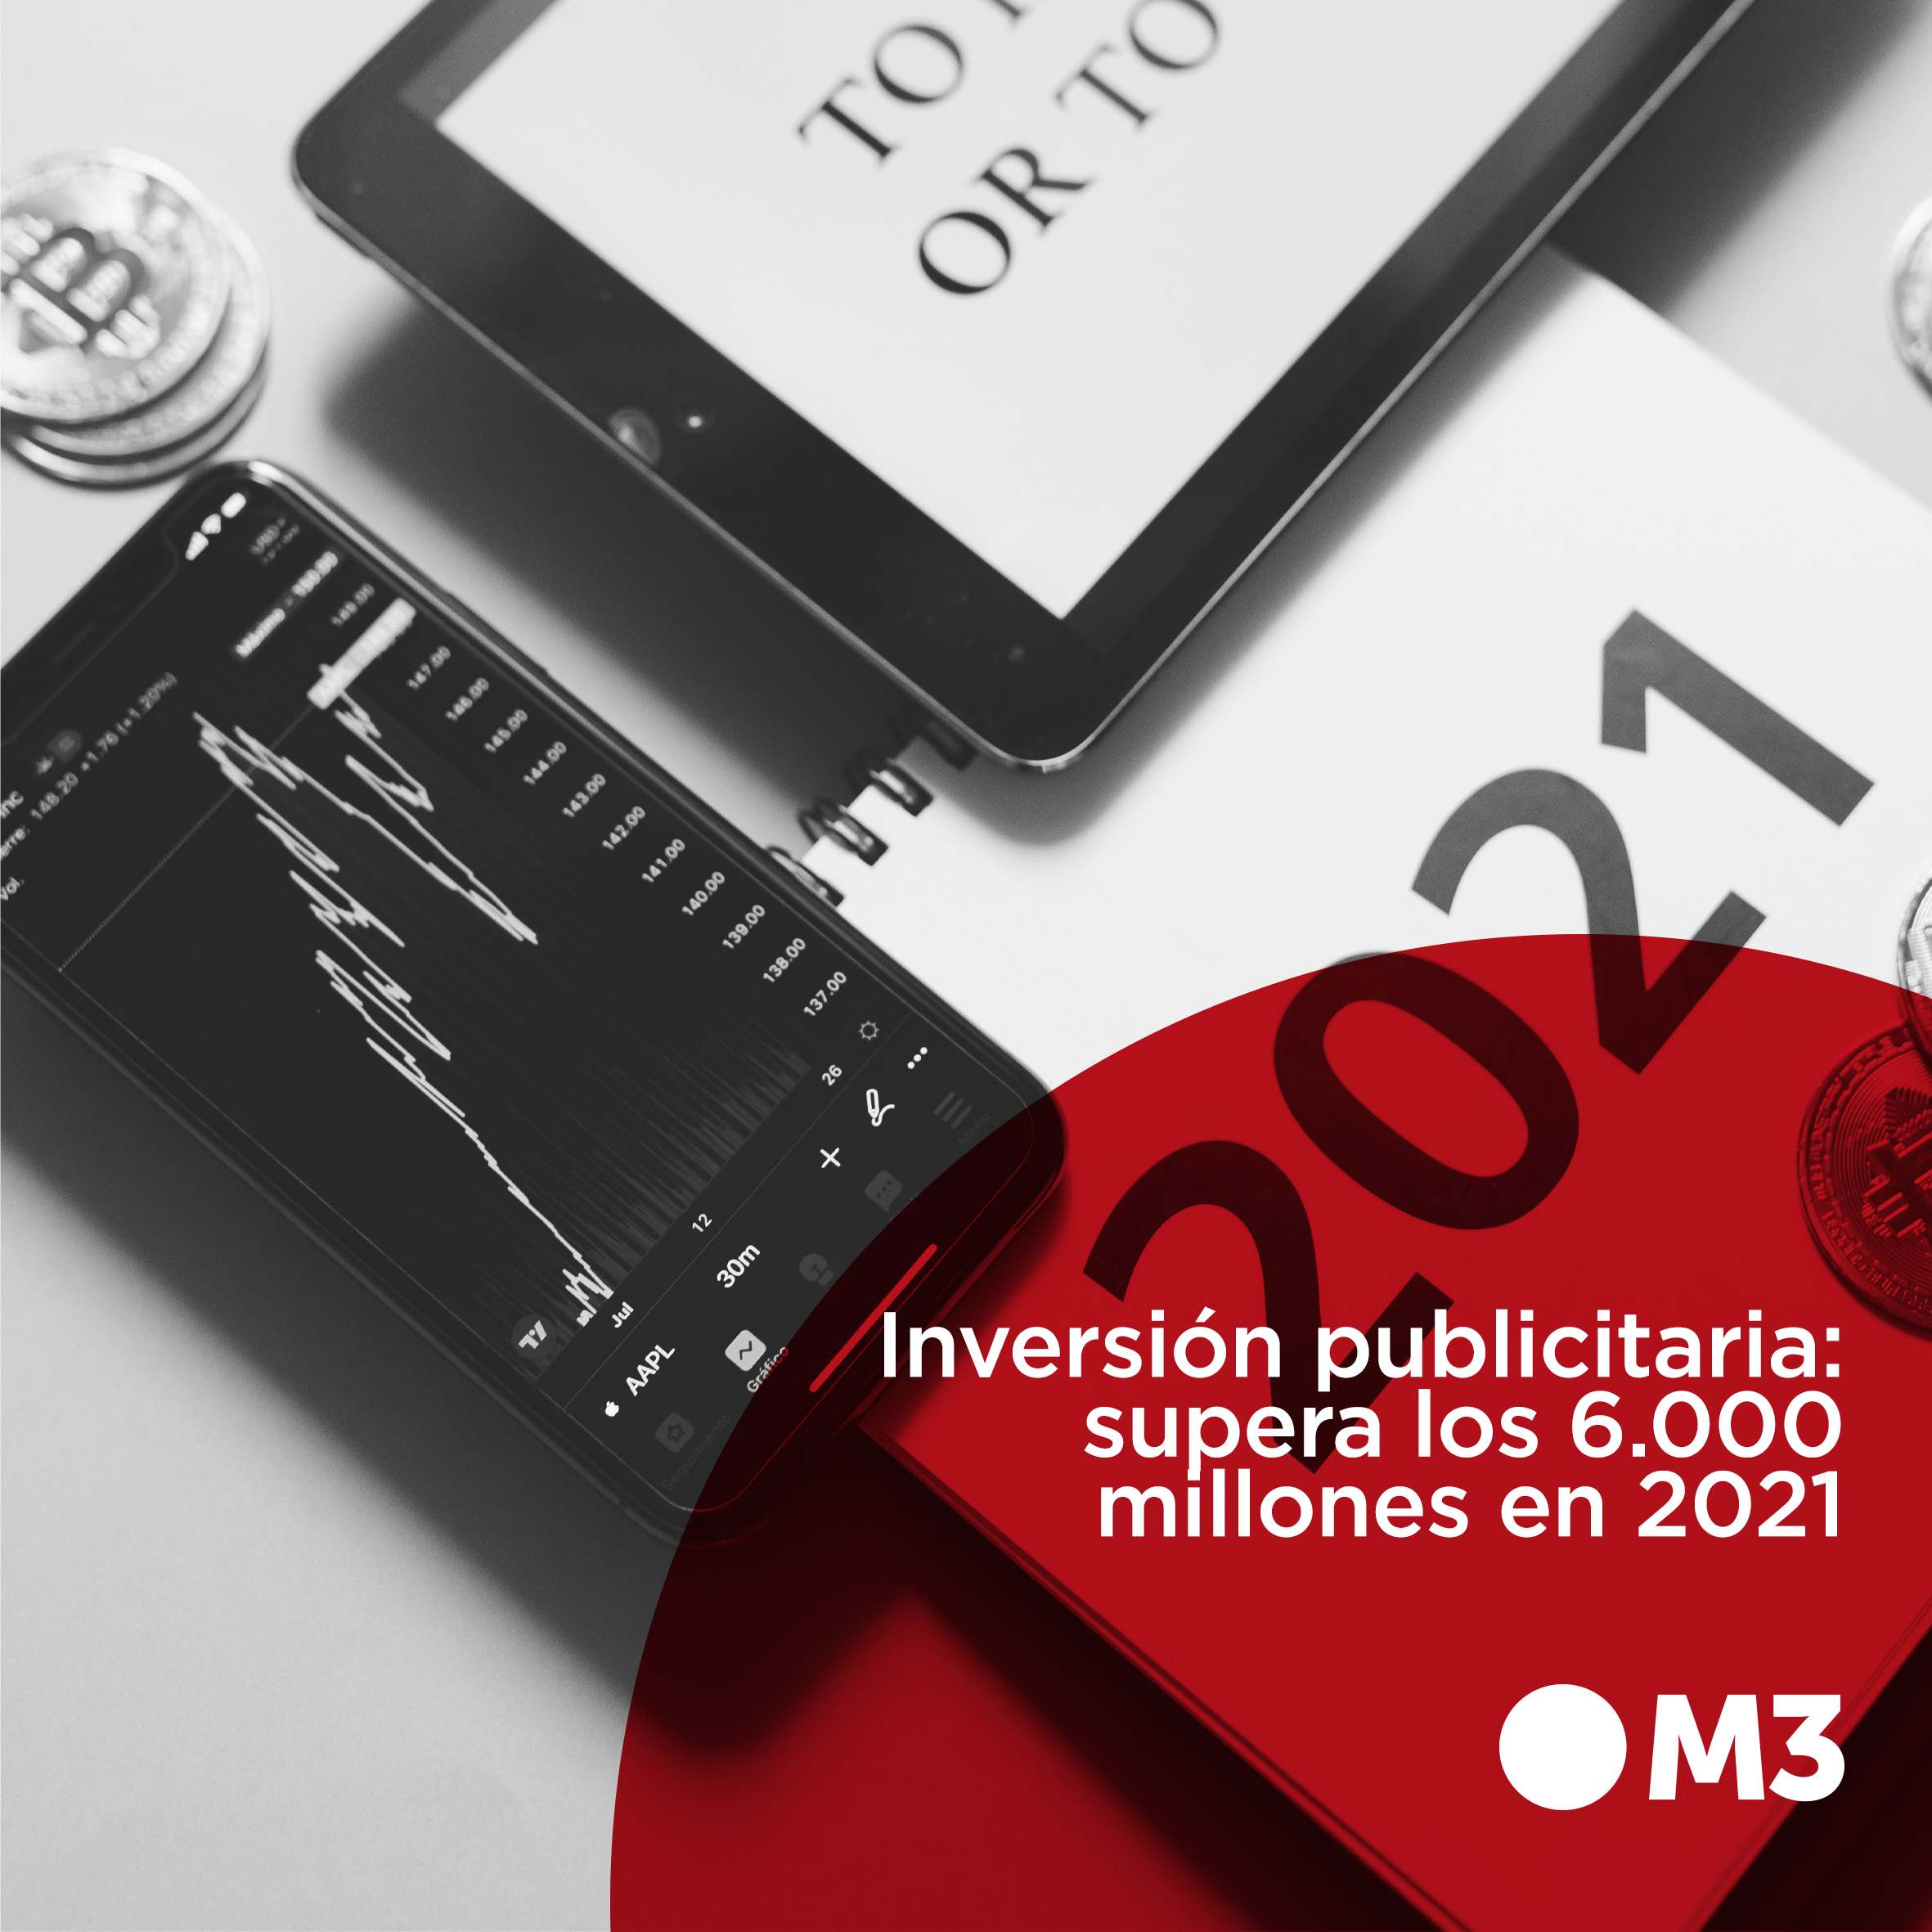 Inversión publicitaria: supera los 6.000 millones en 2021